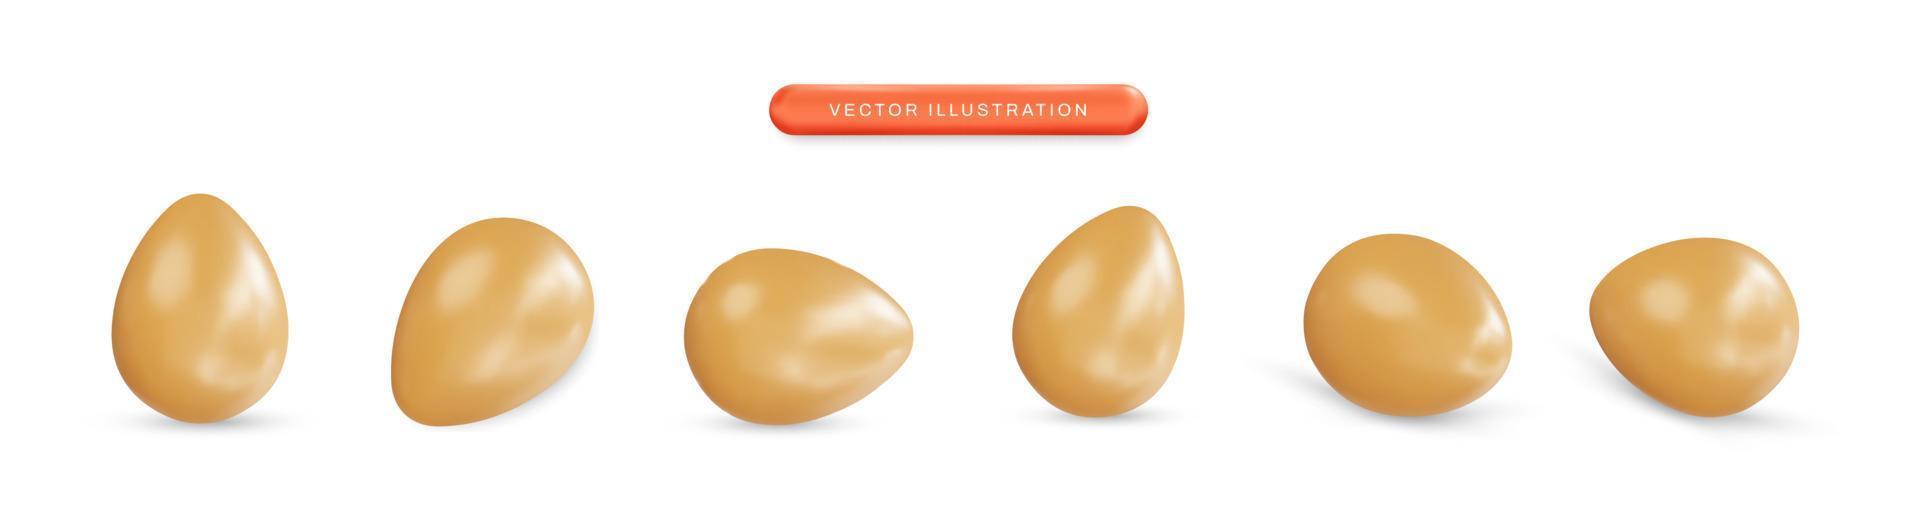 realistiska ägg set 3d vektorillustration vektor